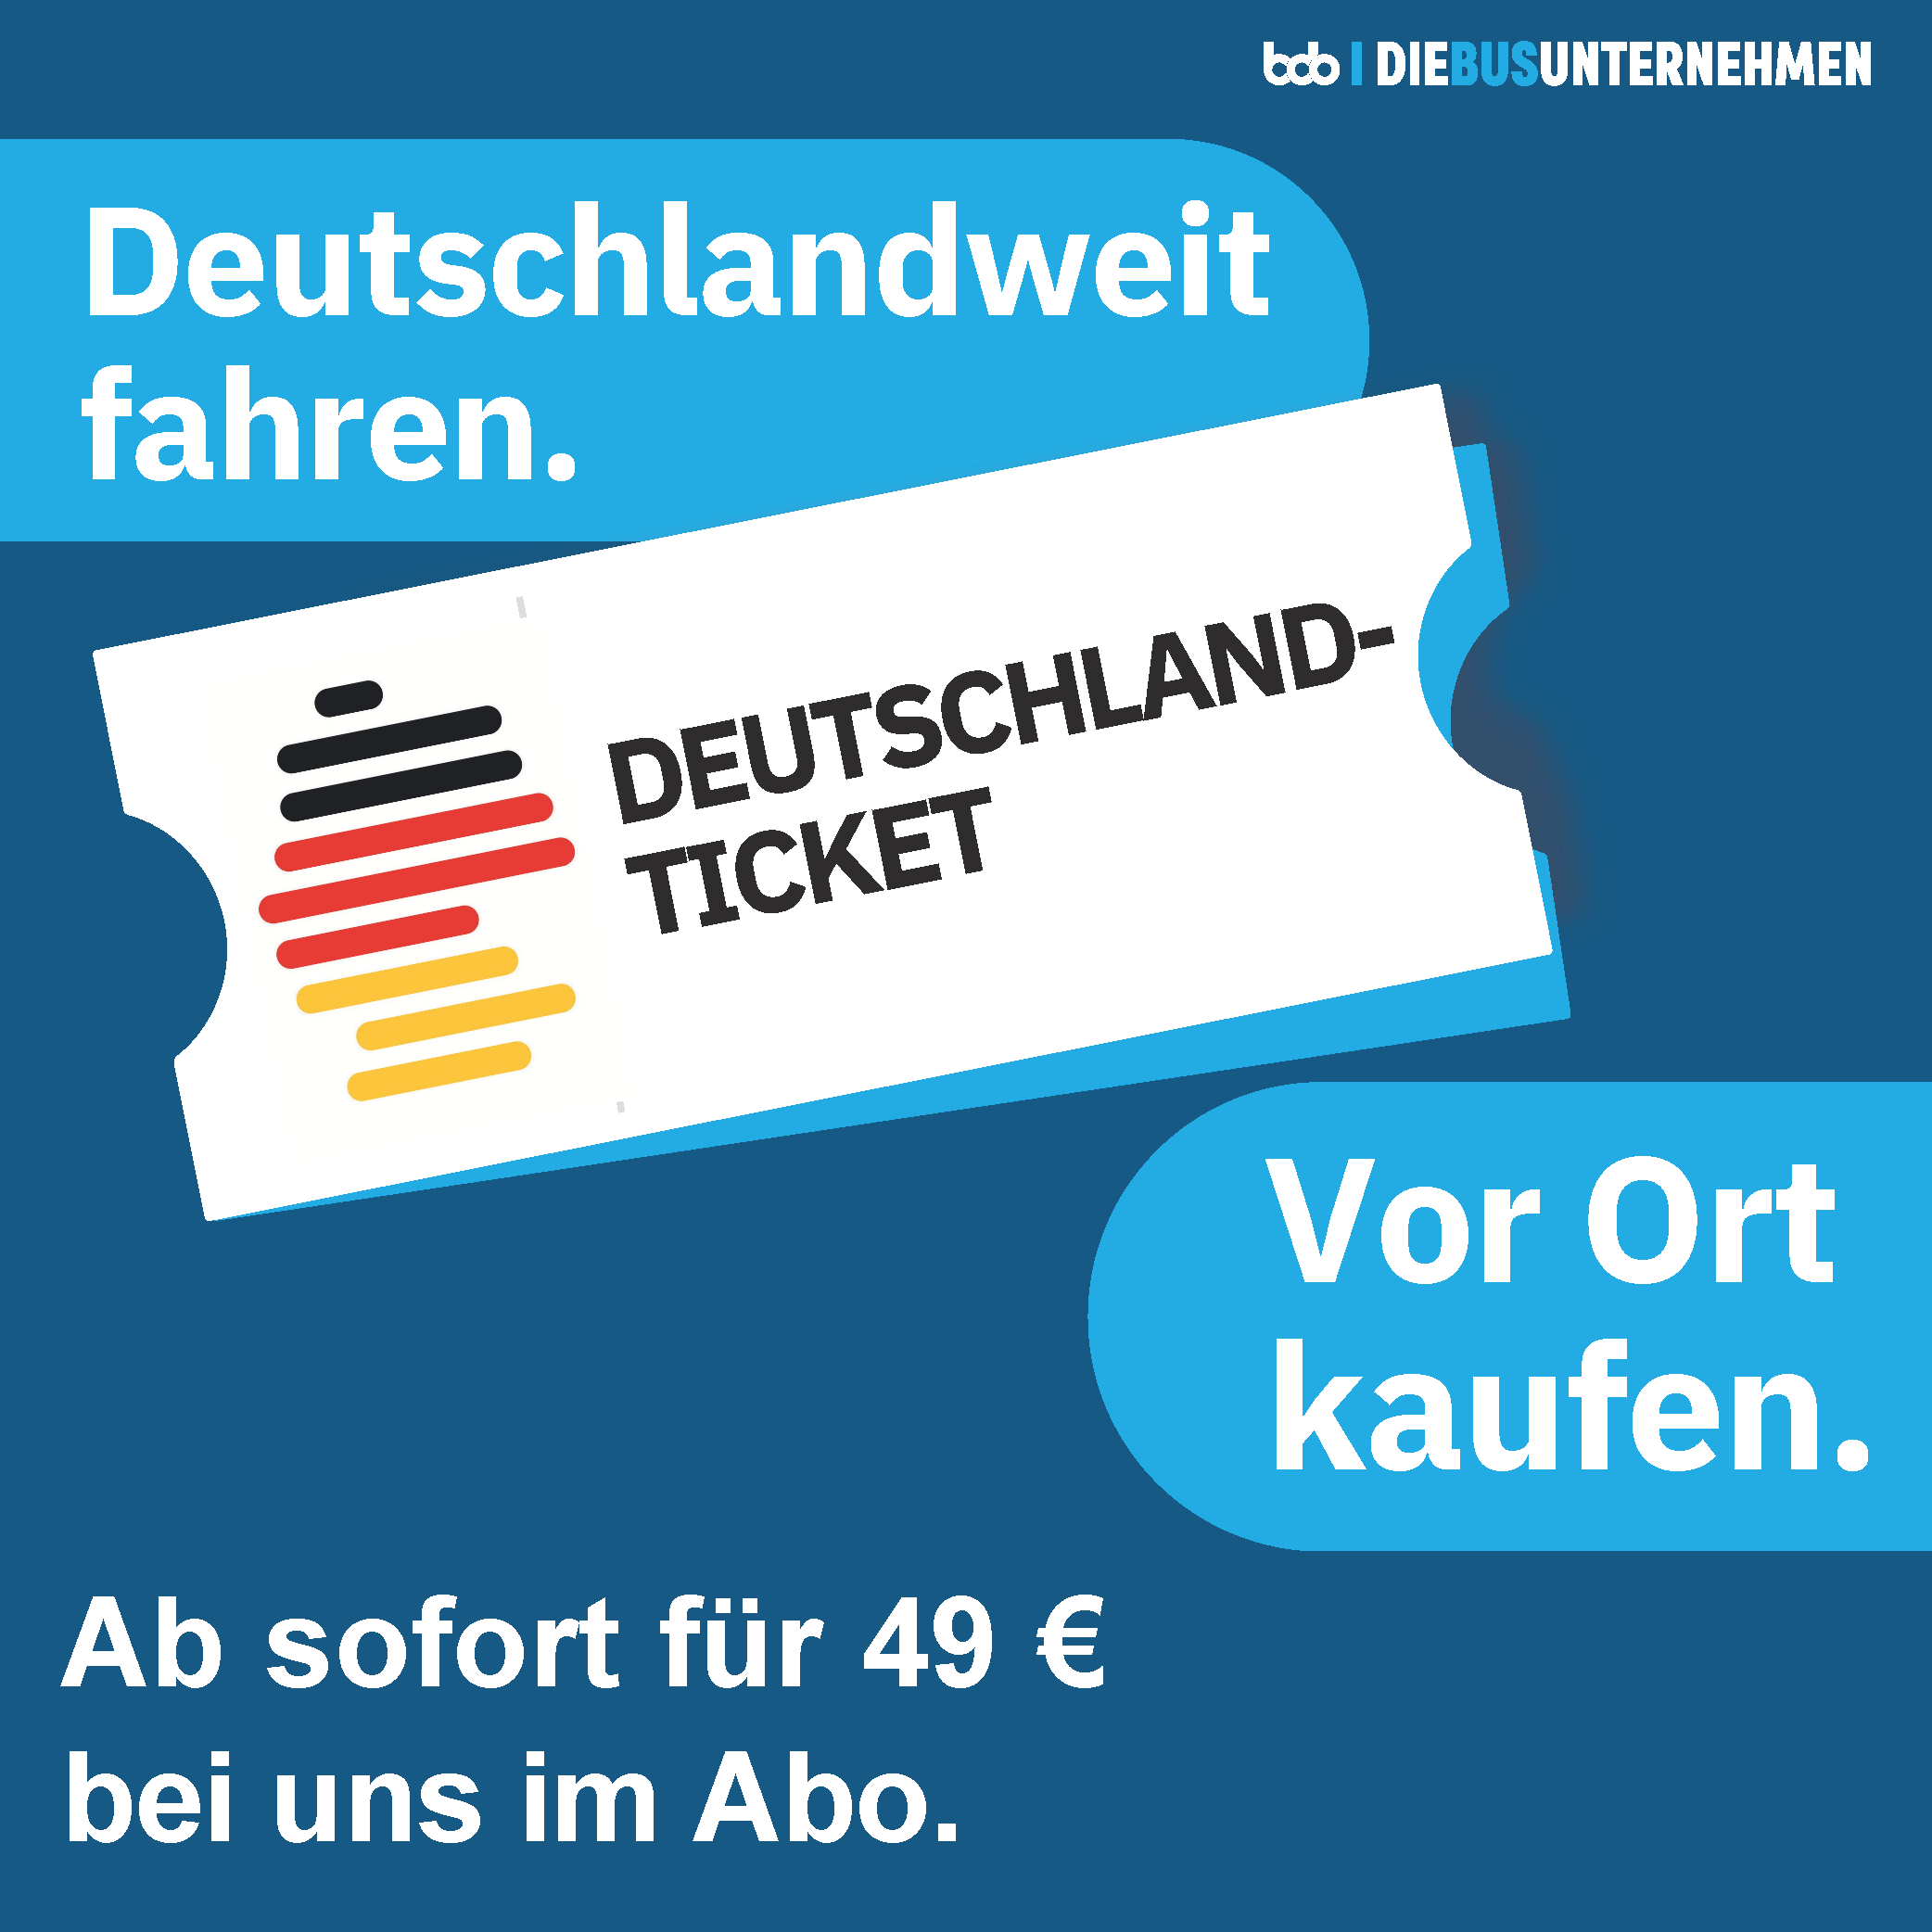 Das Deutschland-Ticket